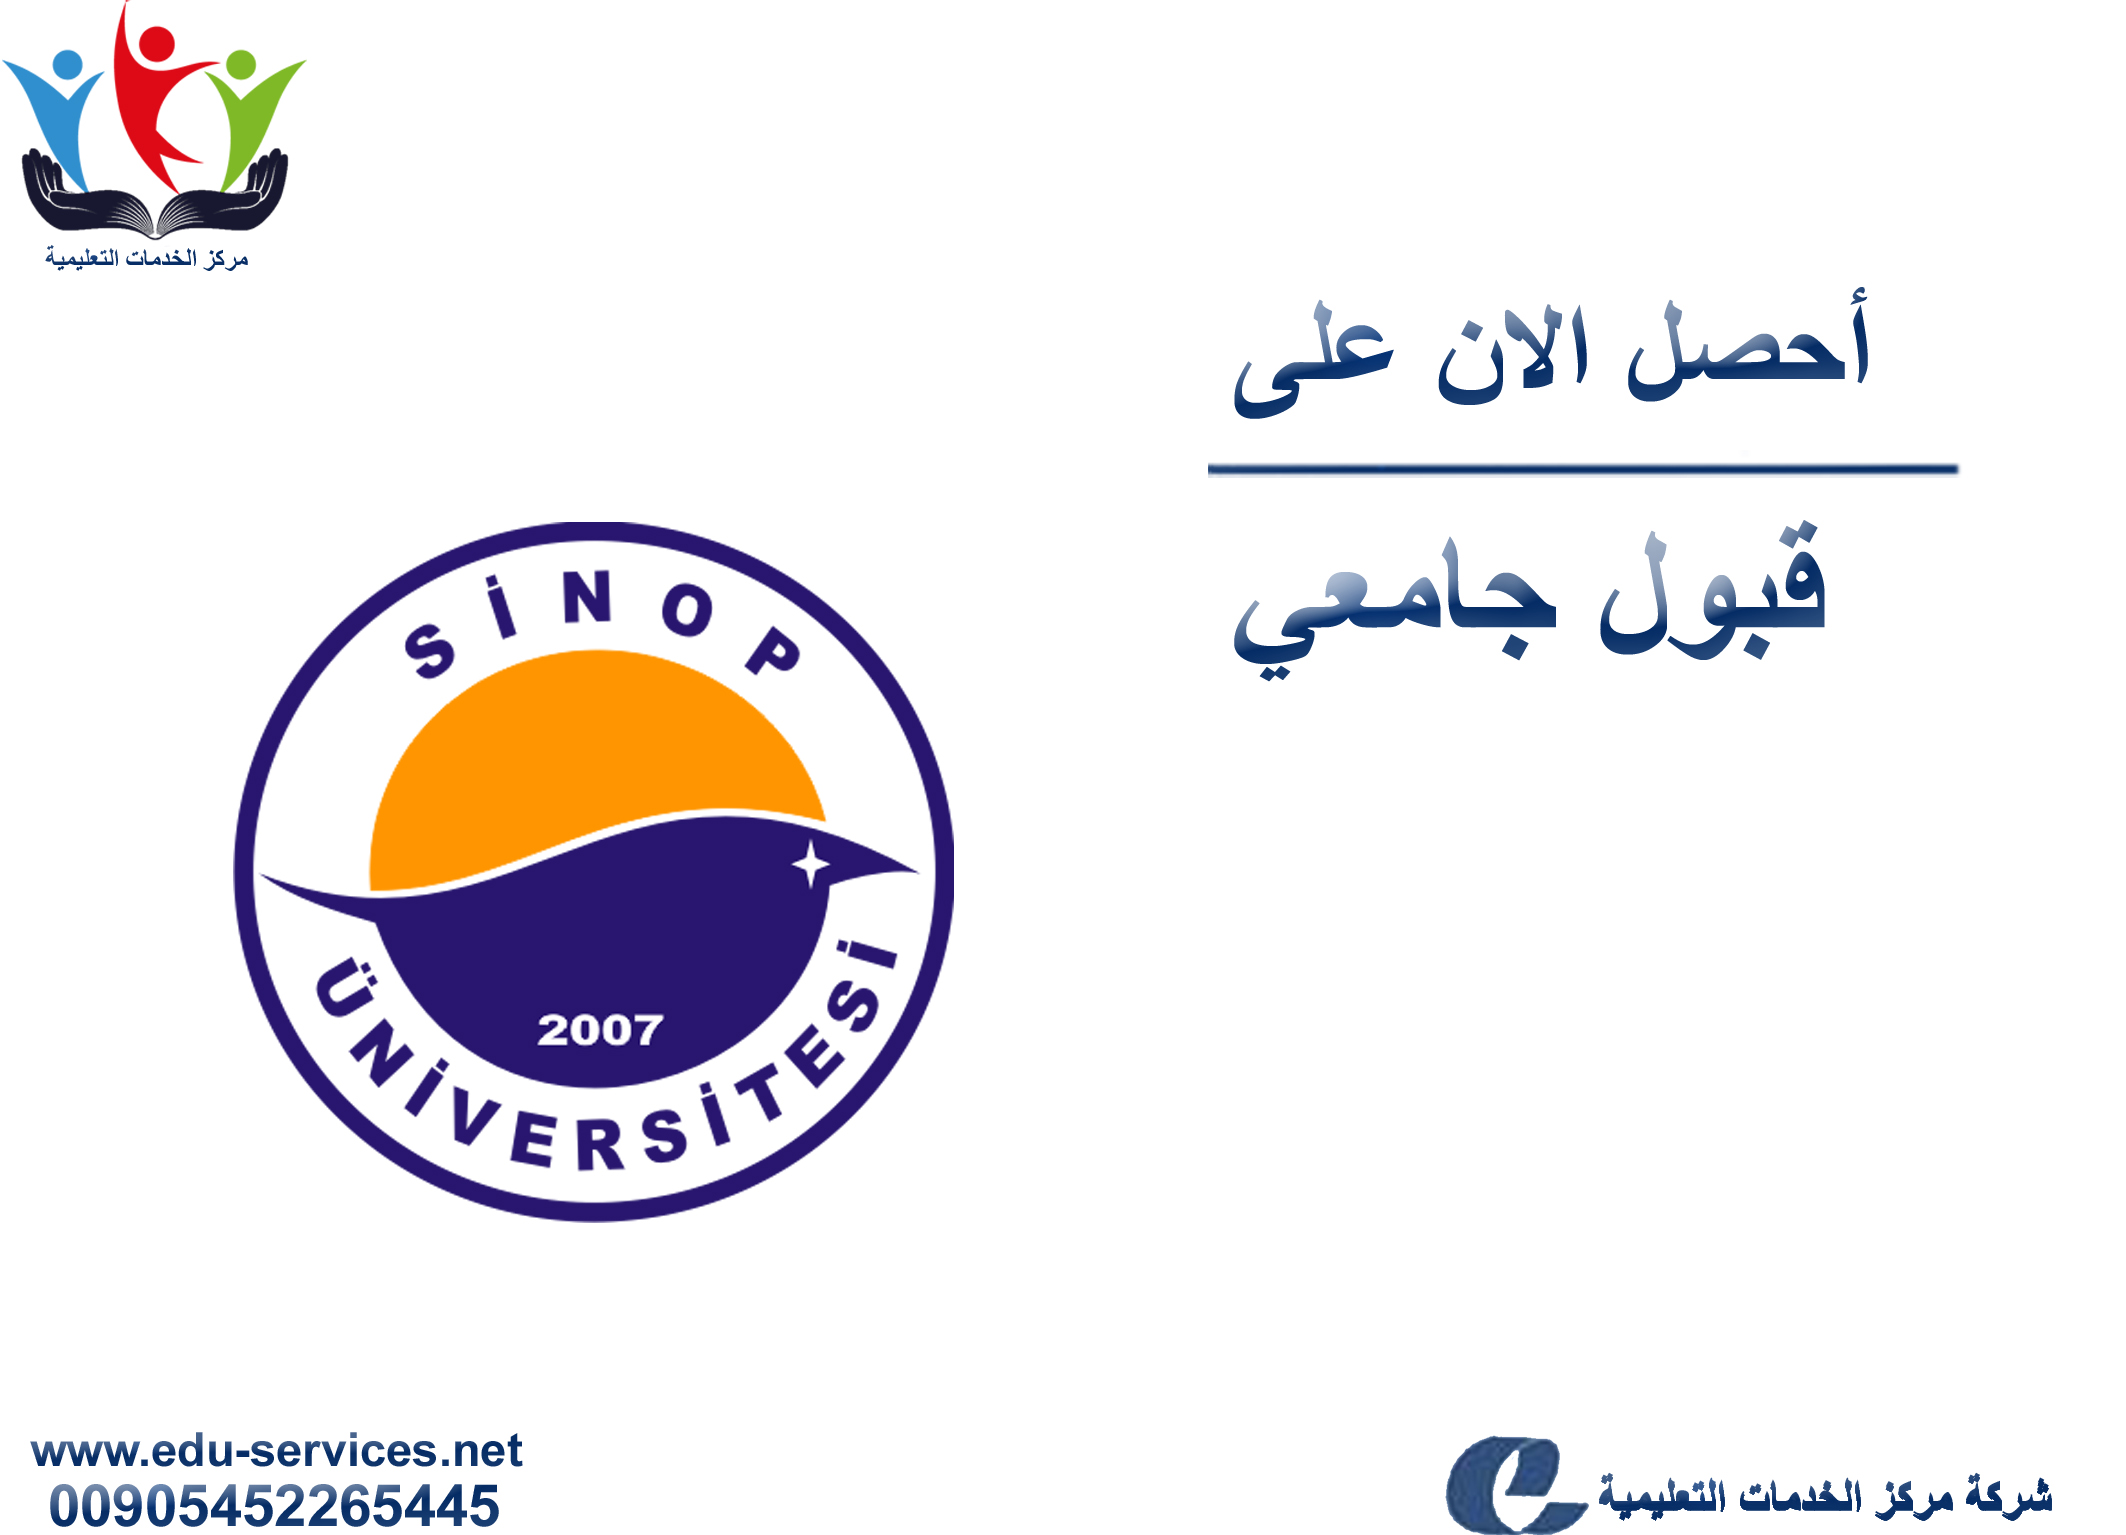 افتتاح التسجيل في جامعة سينوب للعام 2018-2019